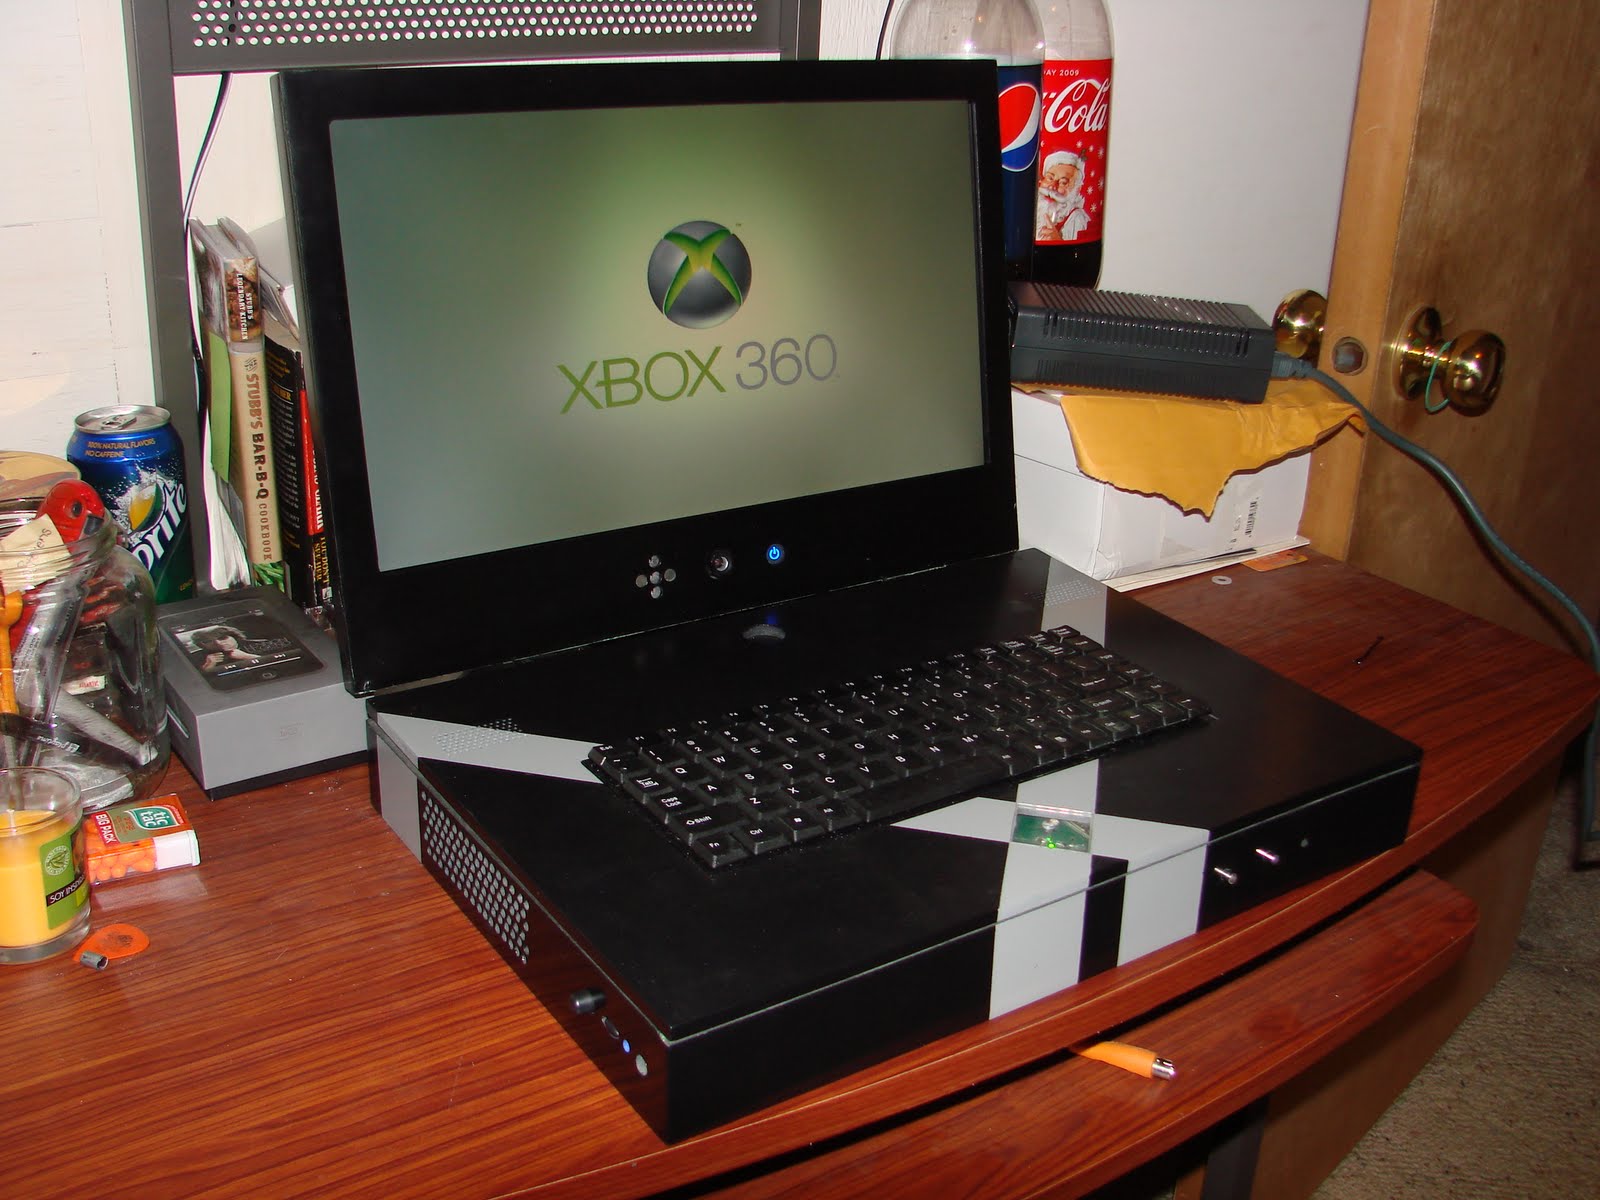 Хбох пк. Xbox 360 ноут. Ноутбук 360 Xbox. ПК из Xbox 360. Компьютер игровой Xbox 360 Slim-5 HS.